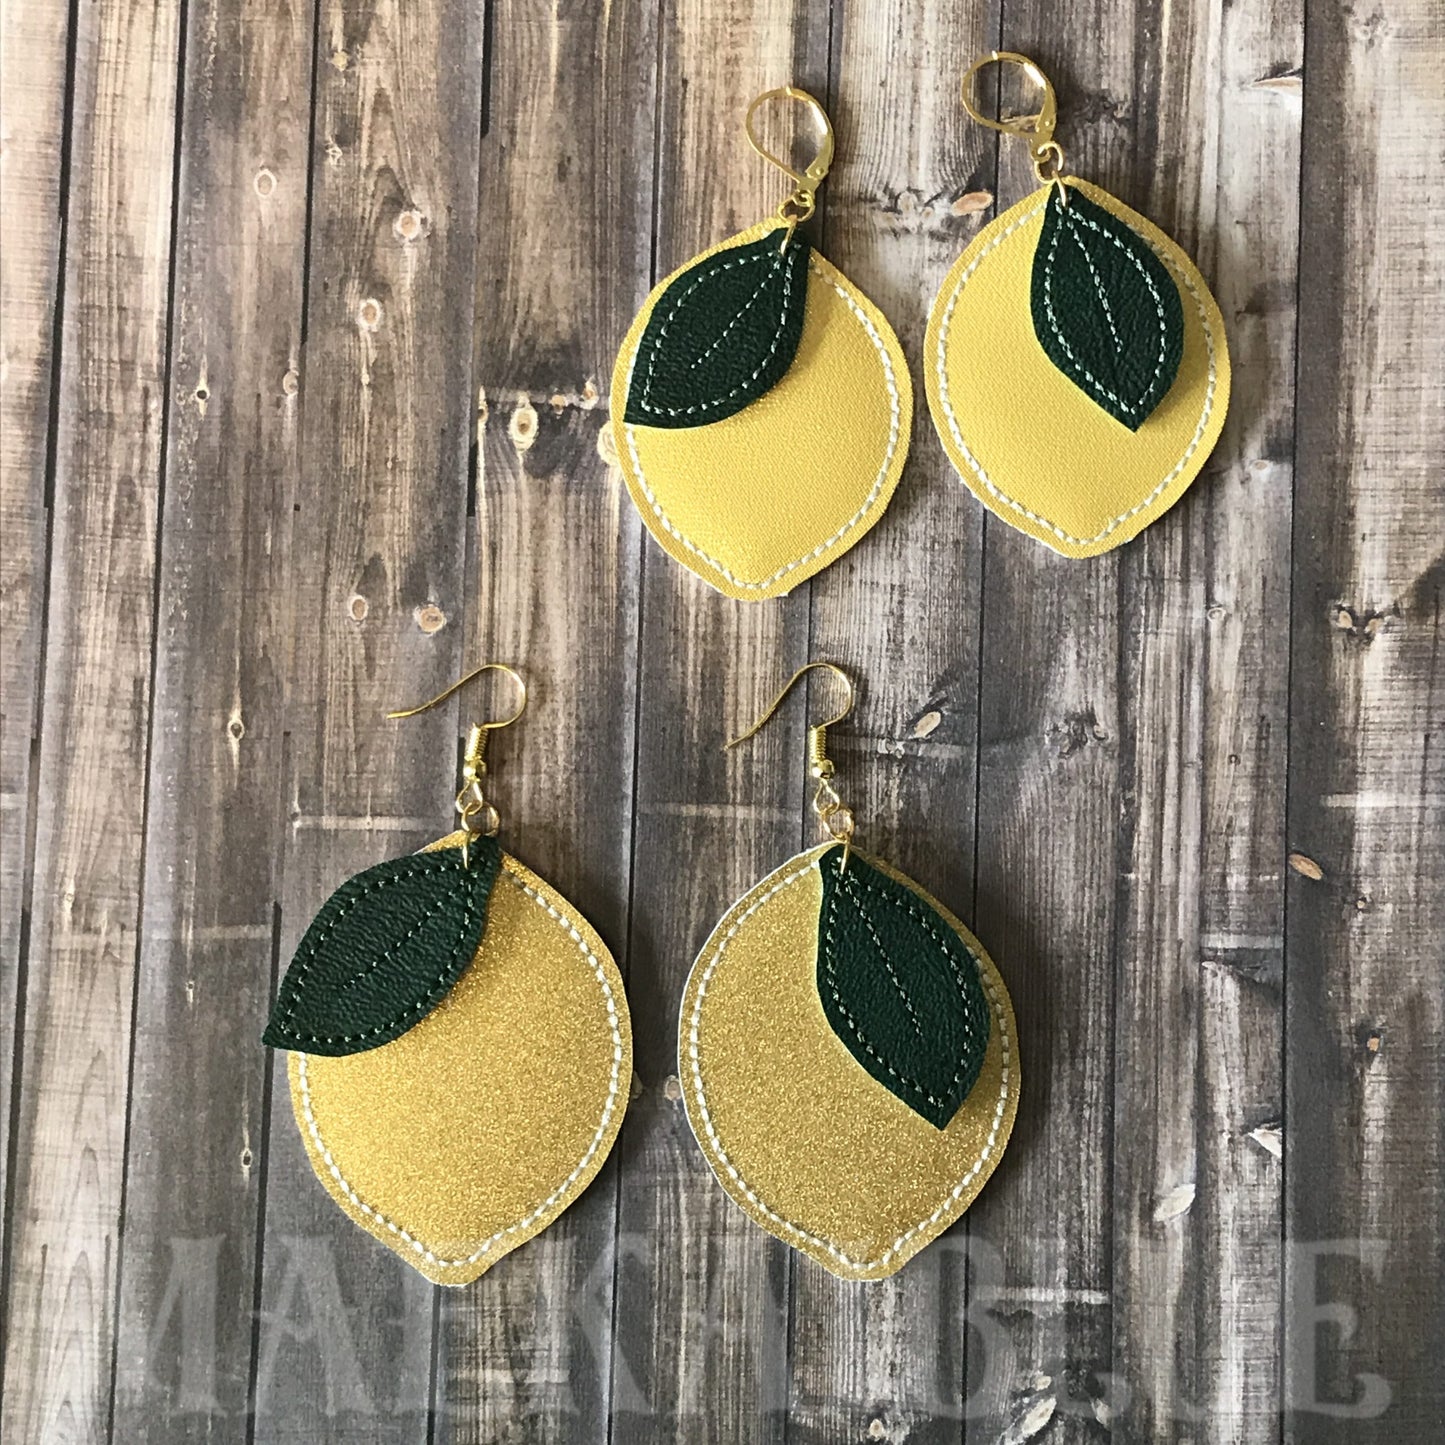 Lemon Earrings - 2 sizes - Digital Embroidery Design